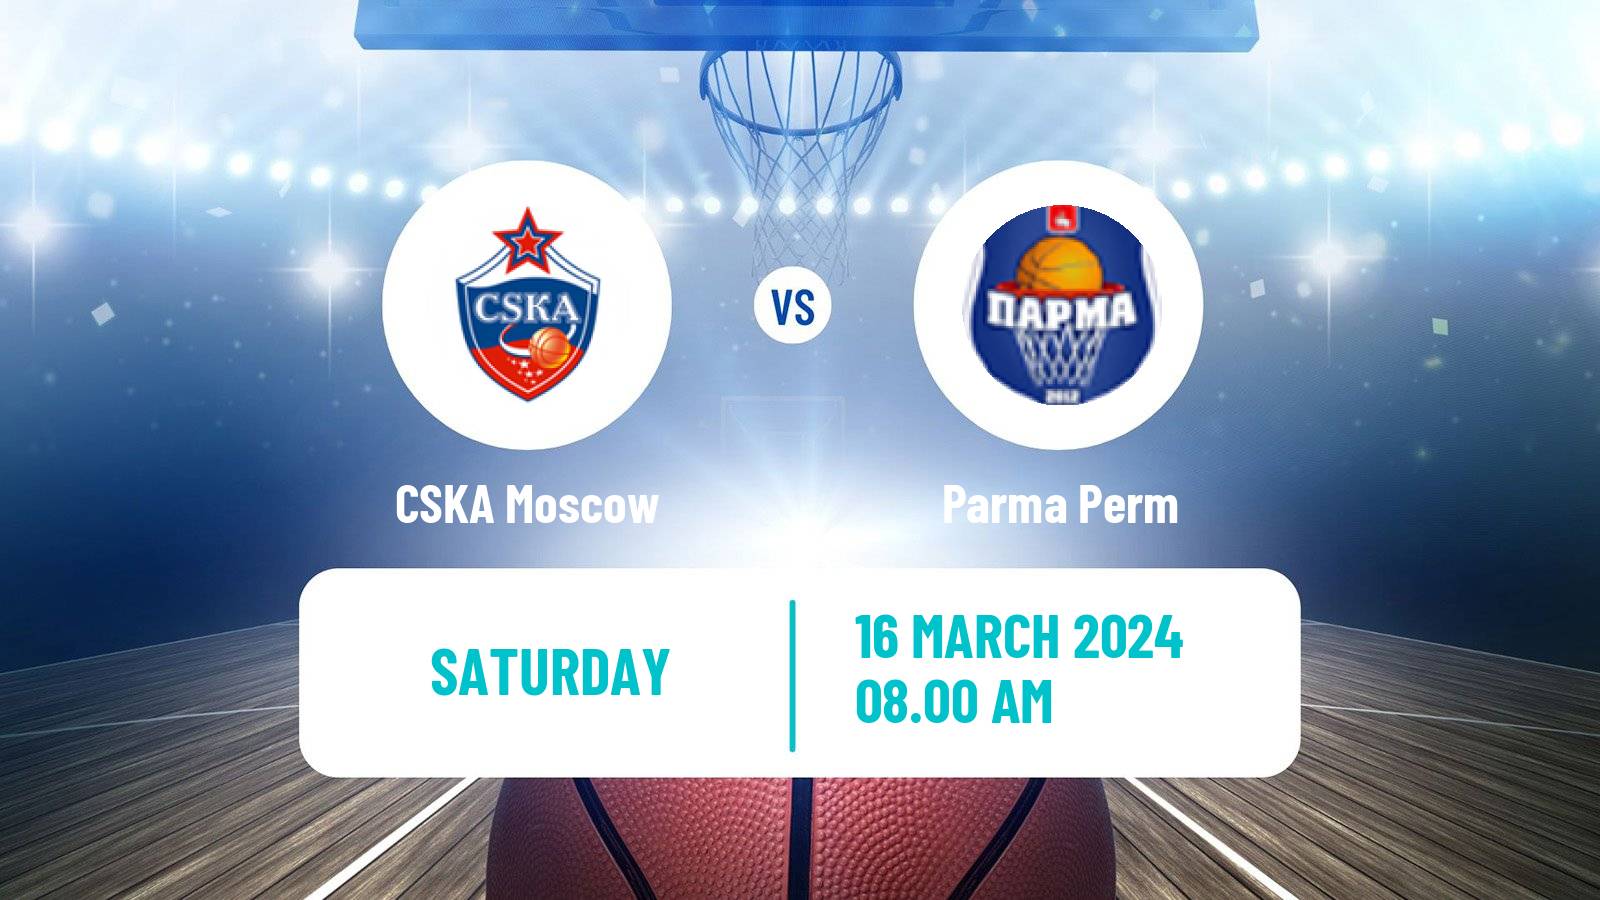 Basketball VTB United League CSKA Moscow - Parma Perm